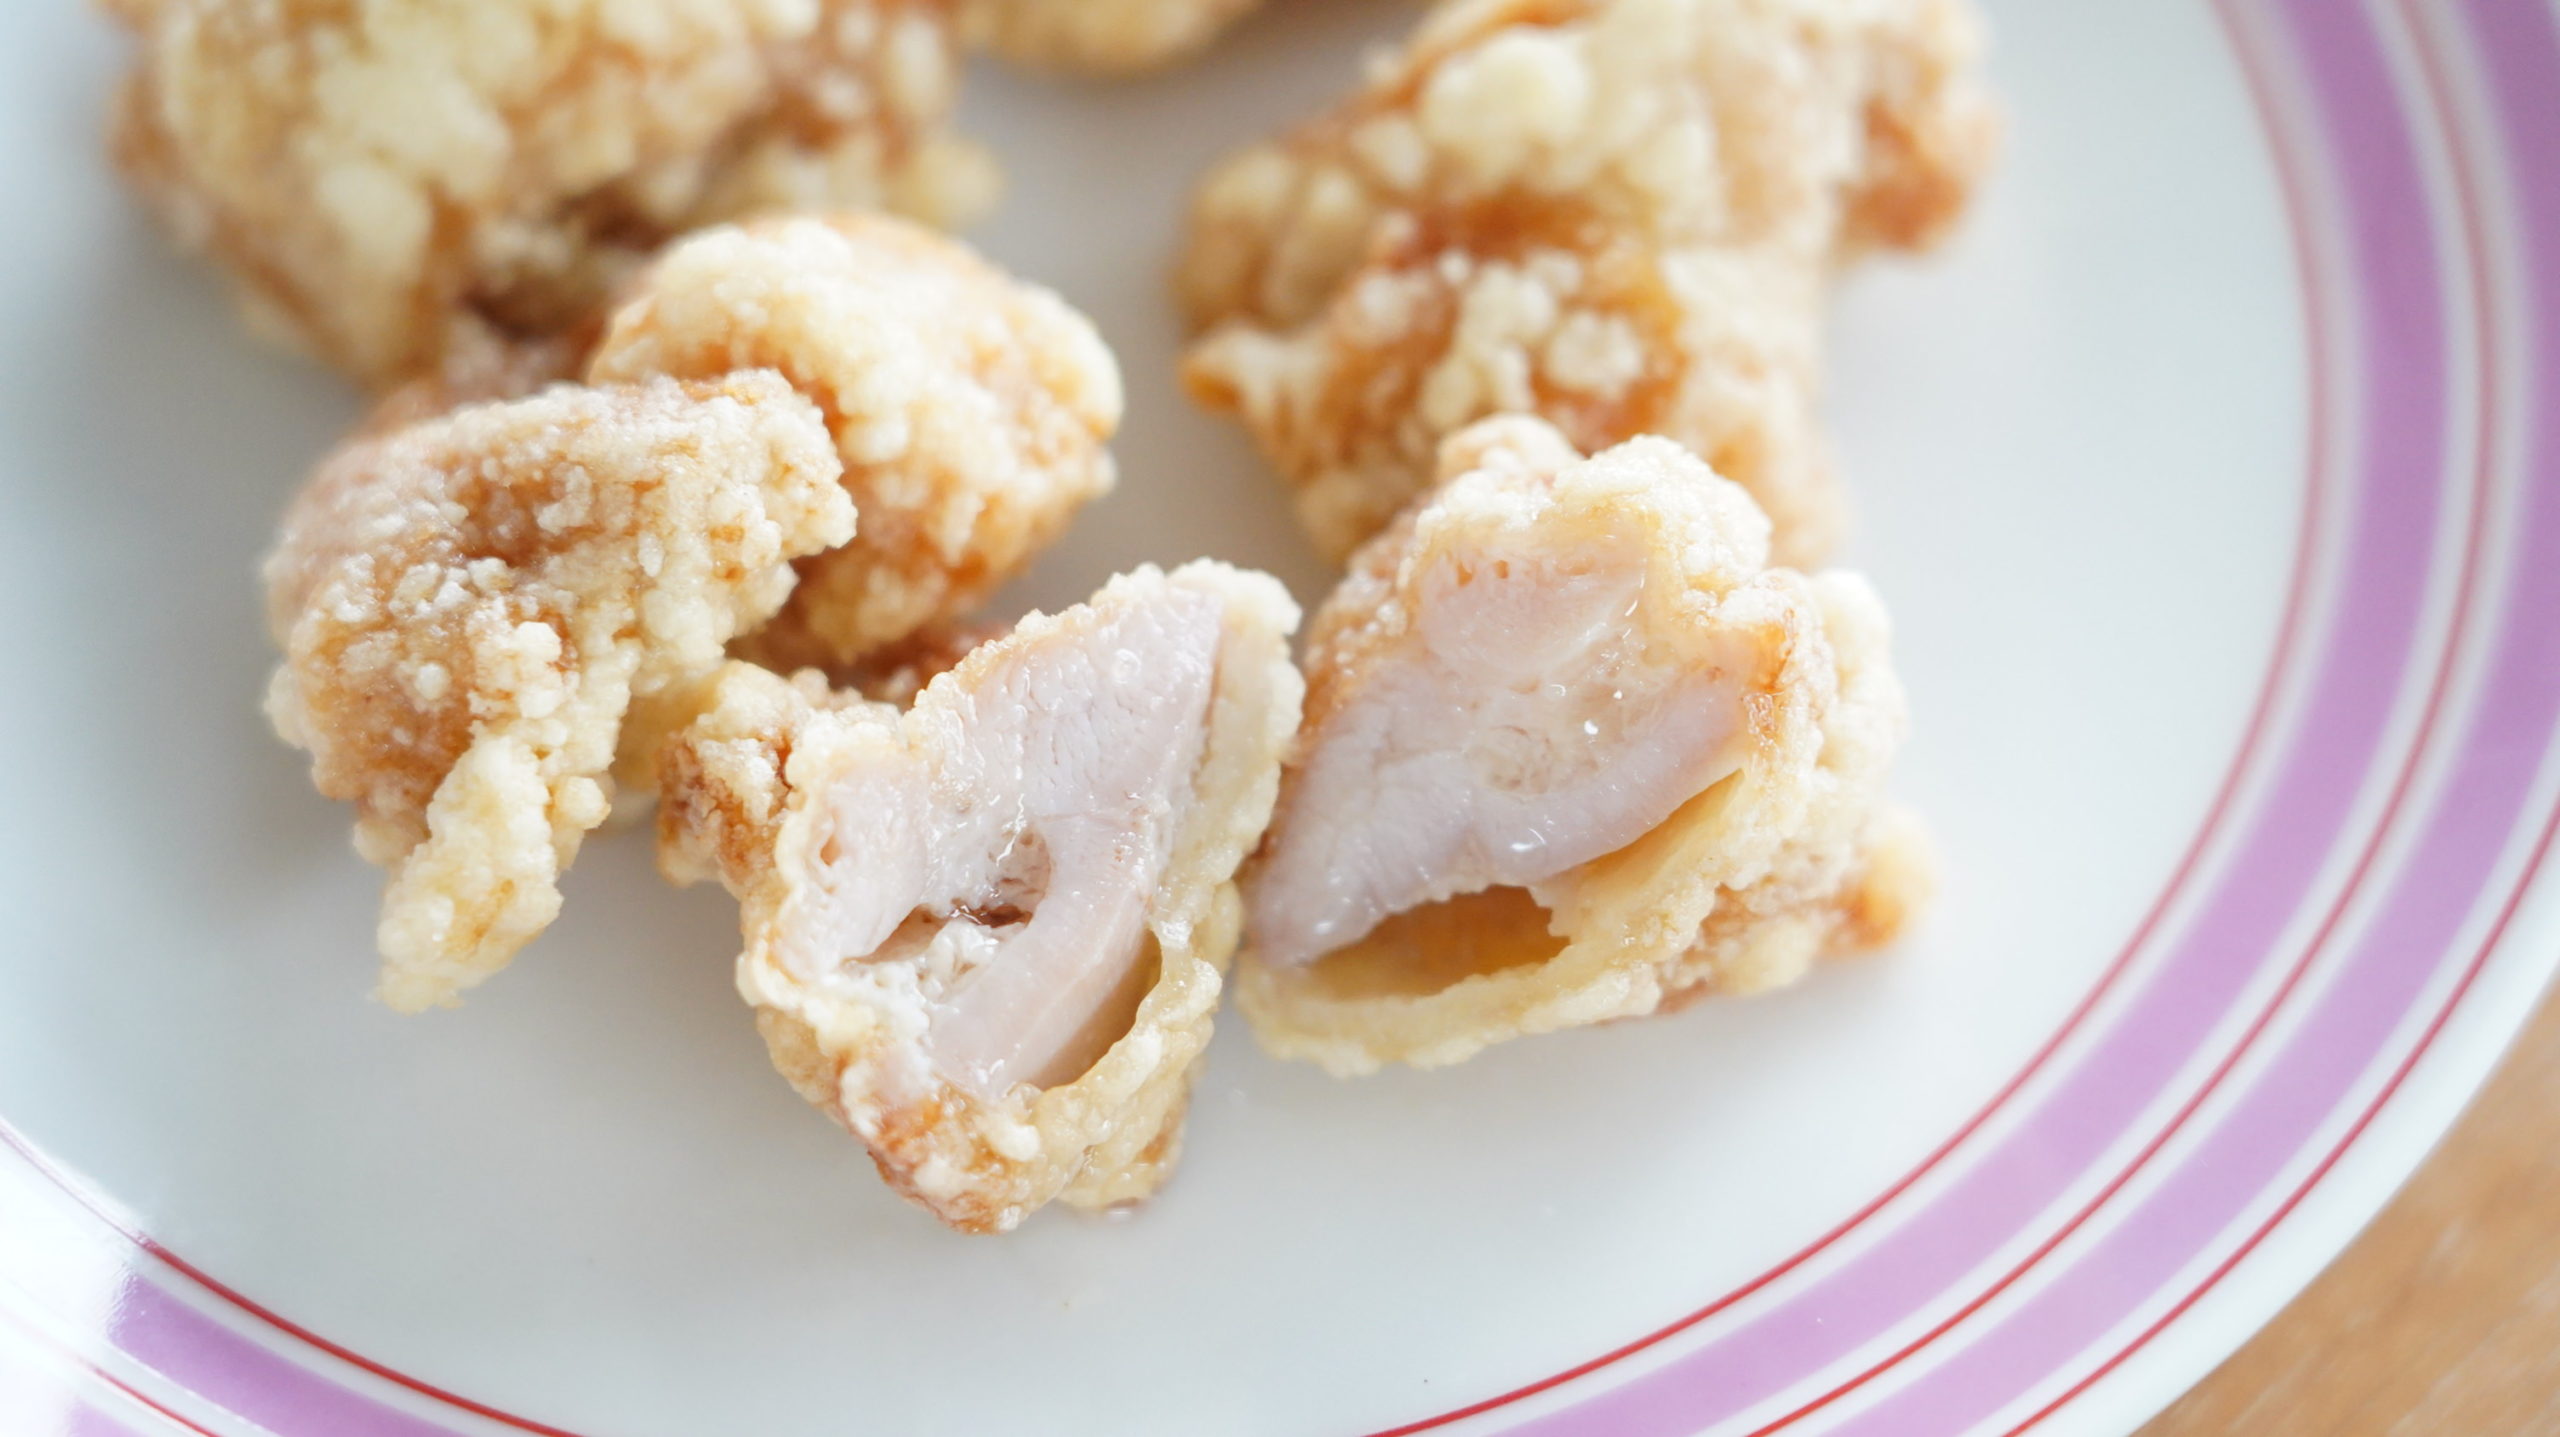 コストコのおすすめ冷凍食品「CP 若鶏の竜田揚げ」の断面から肉汁が溢れ出ている写真